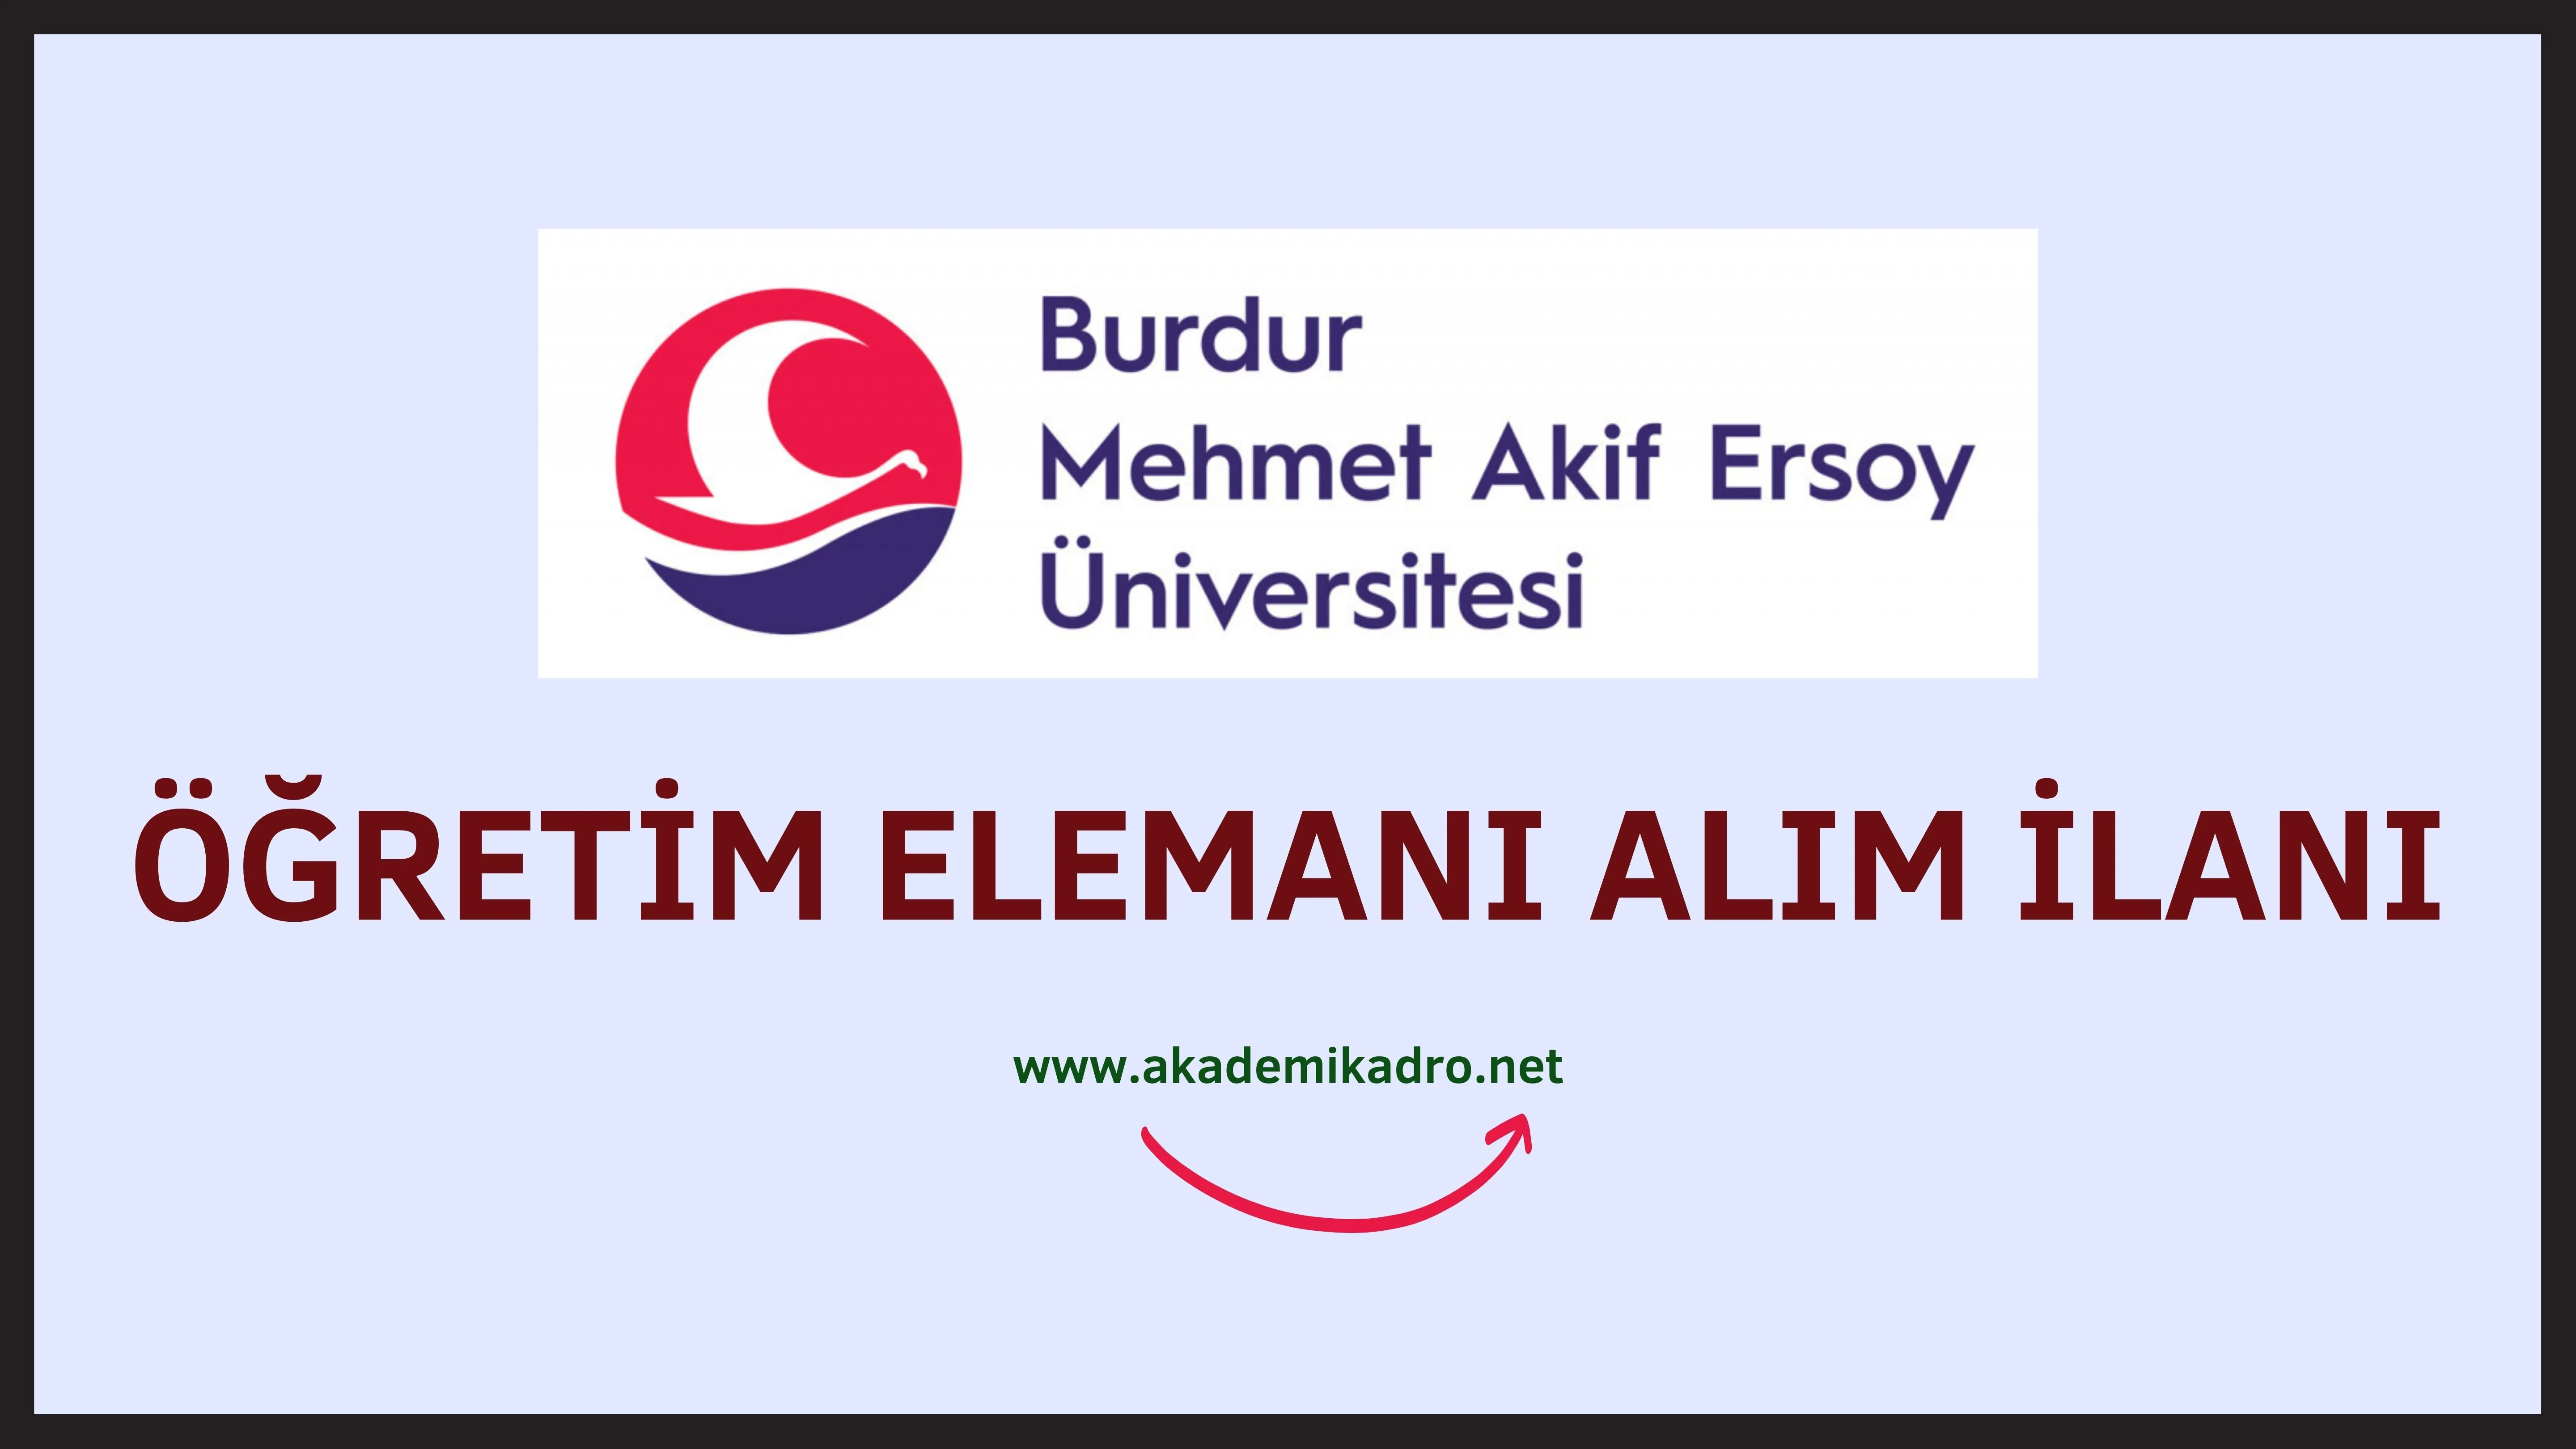 Burdur Mehmet Akif Ersoy Üniversitesi 12 Araştırma görevlisi ve 7 Öğretim Görevlisi alacak.